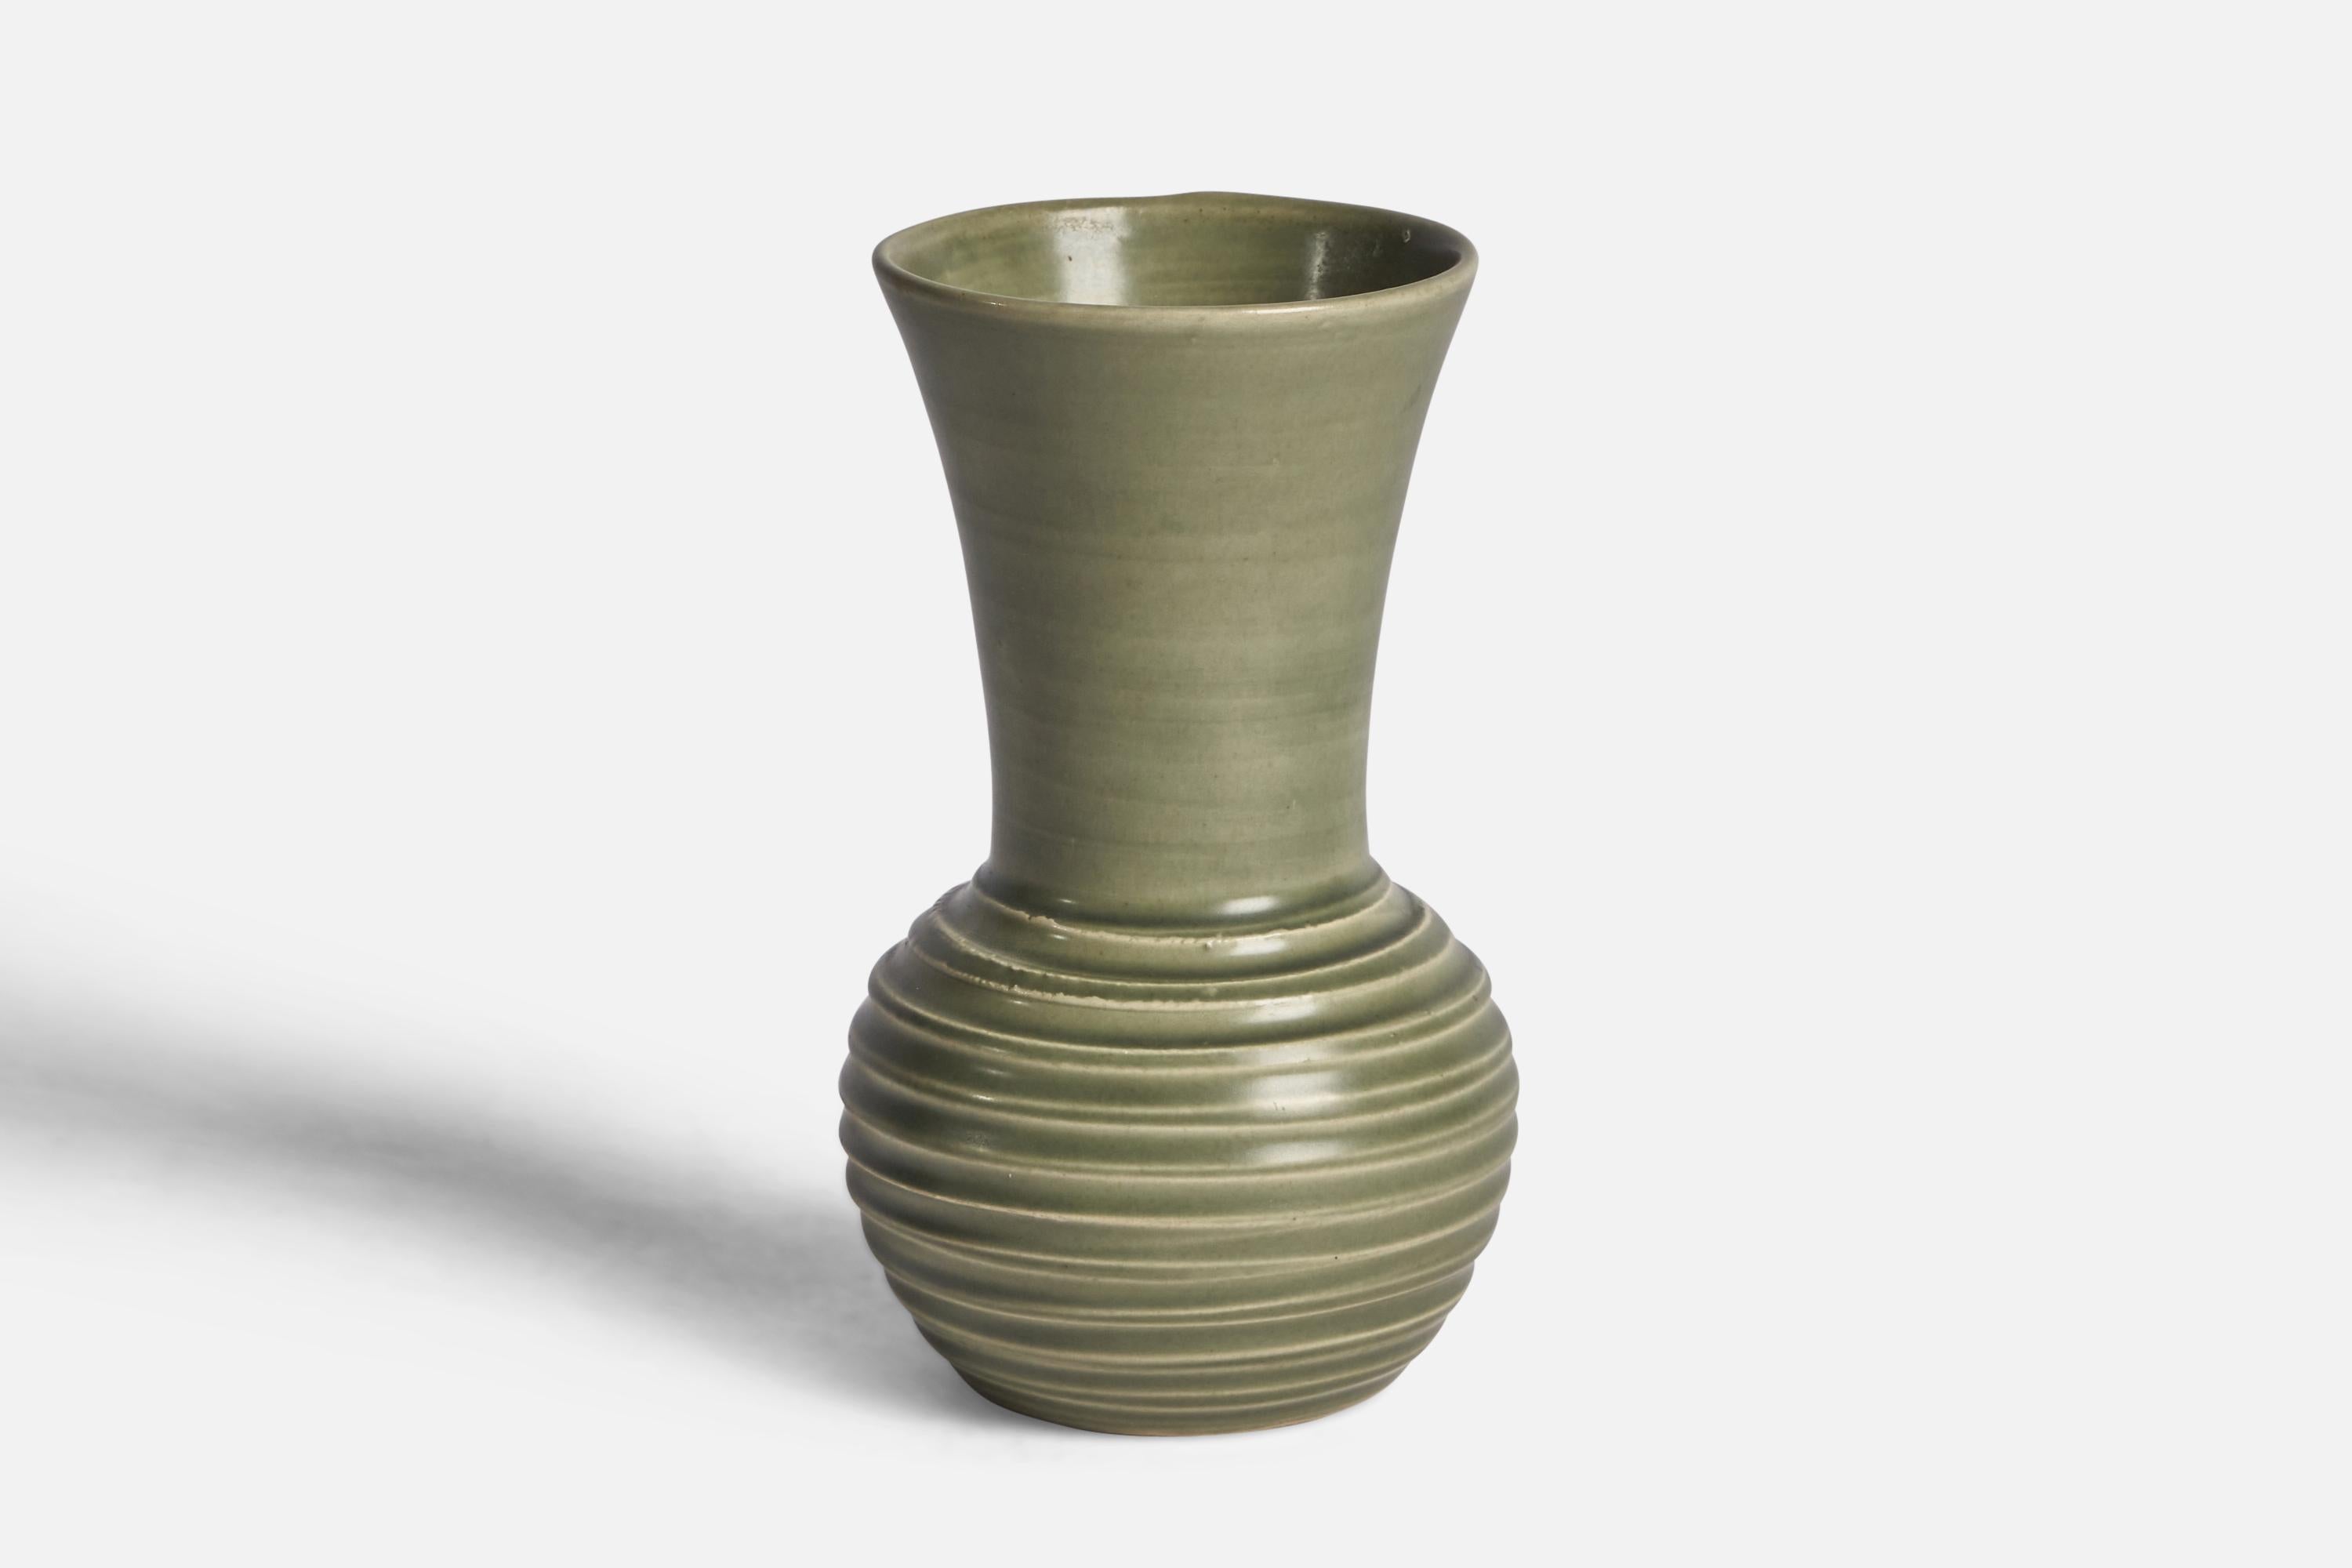 Vase aus grün glasiertem Steingut, entworfen und hergestellt von Bo Fajans, Schweden, 1940er Jahre.

